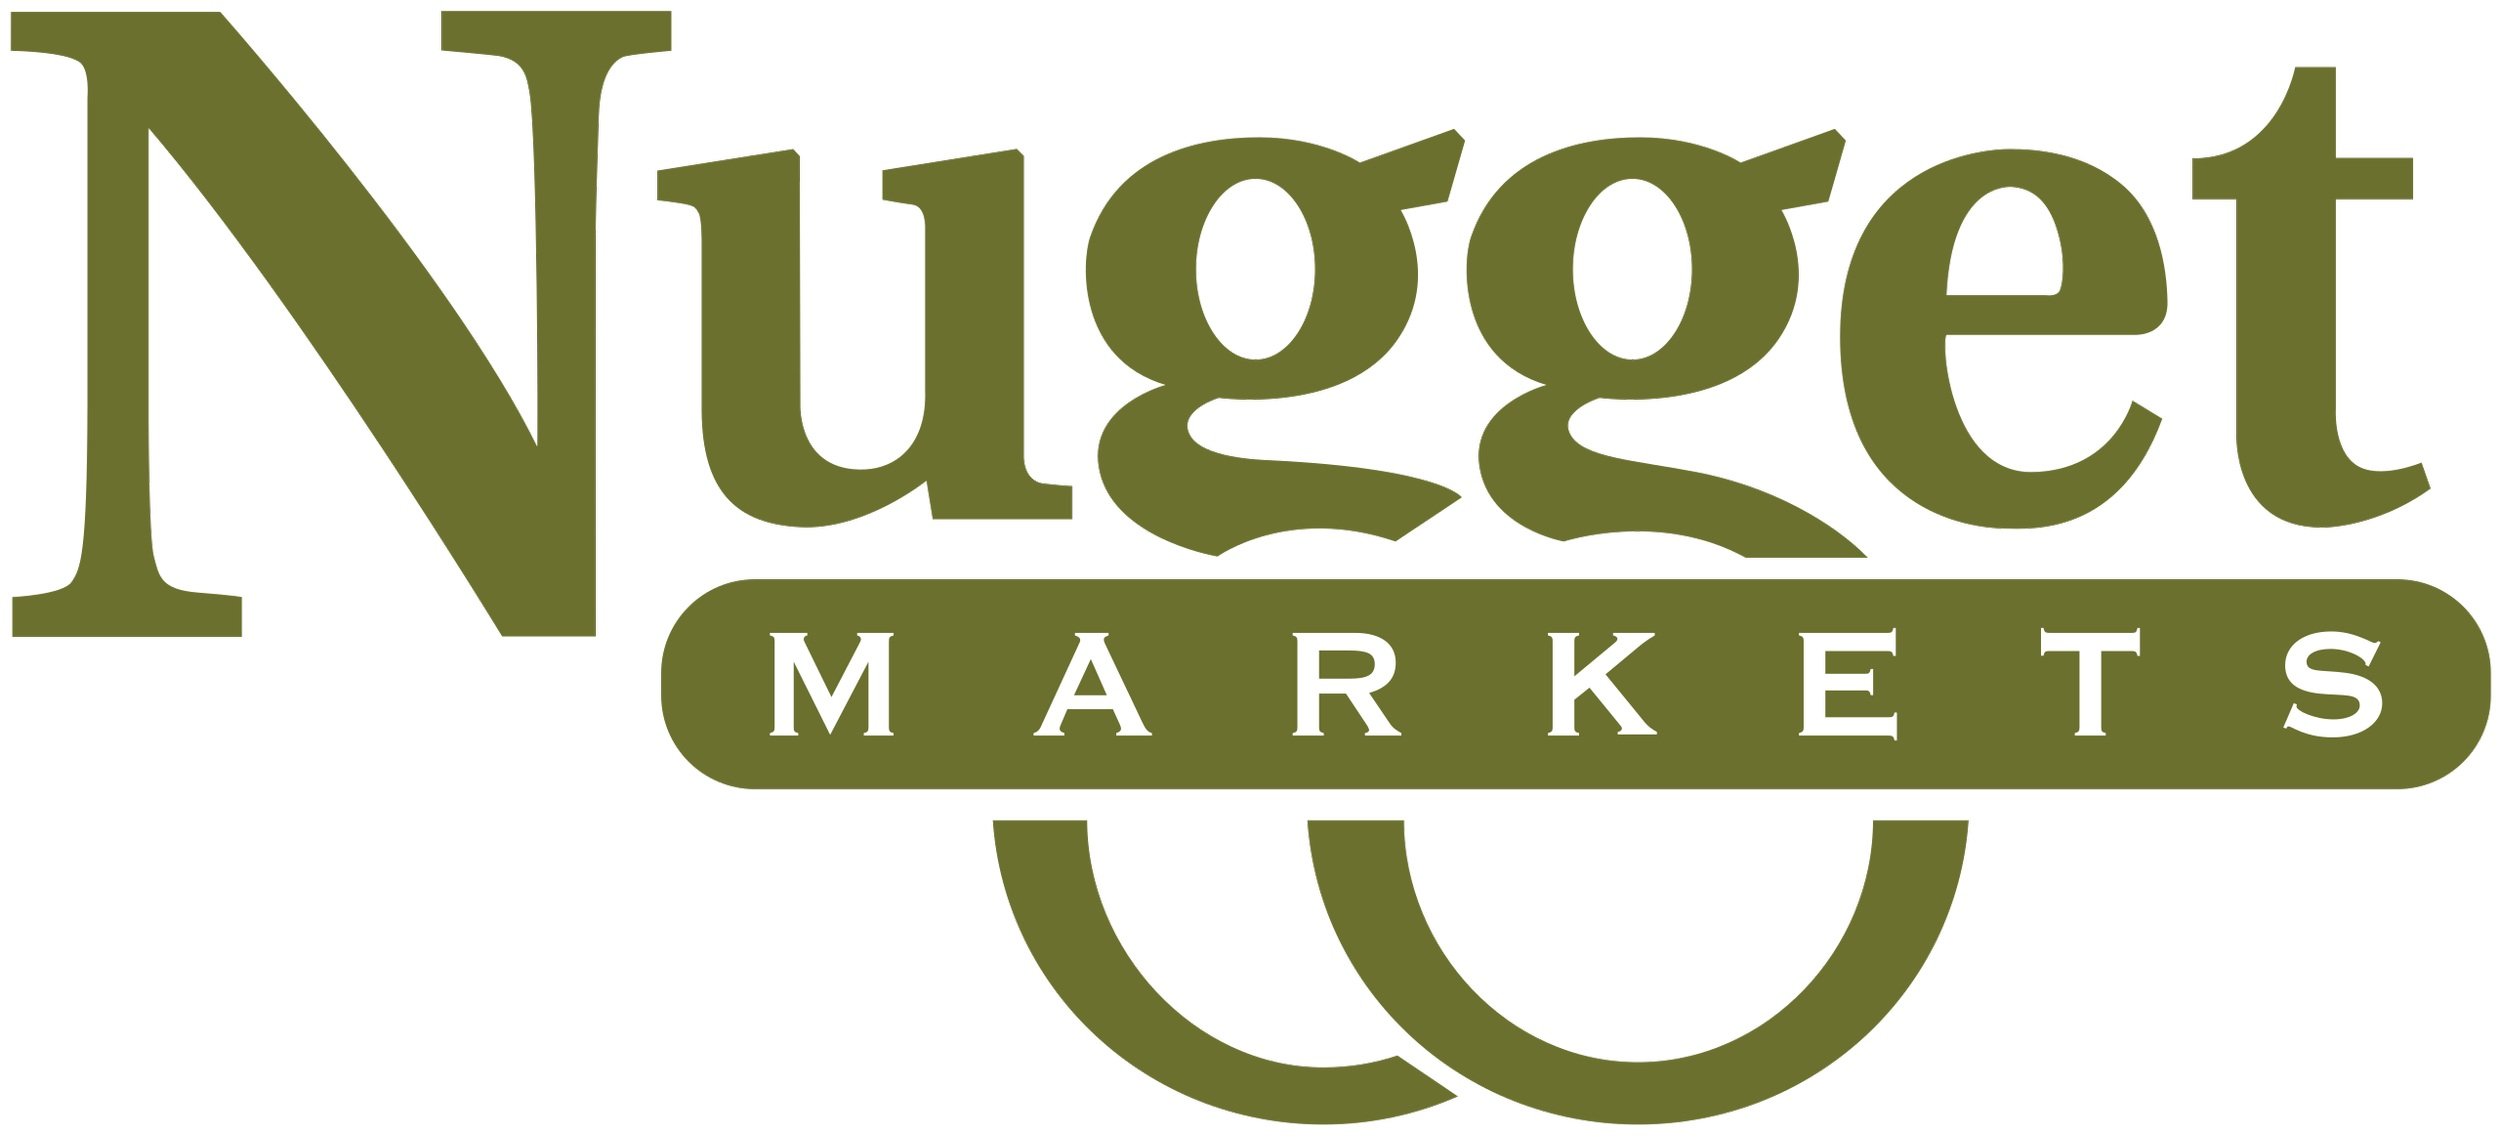 2560px-Nugget_Markets_logo.svg.jpg